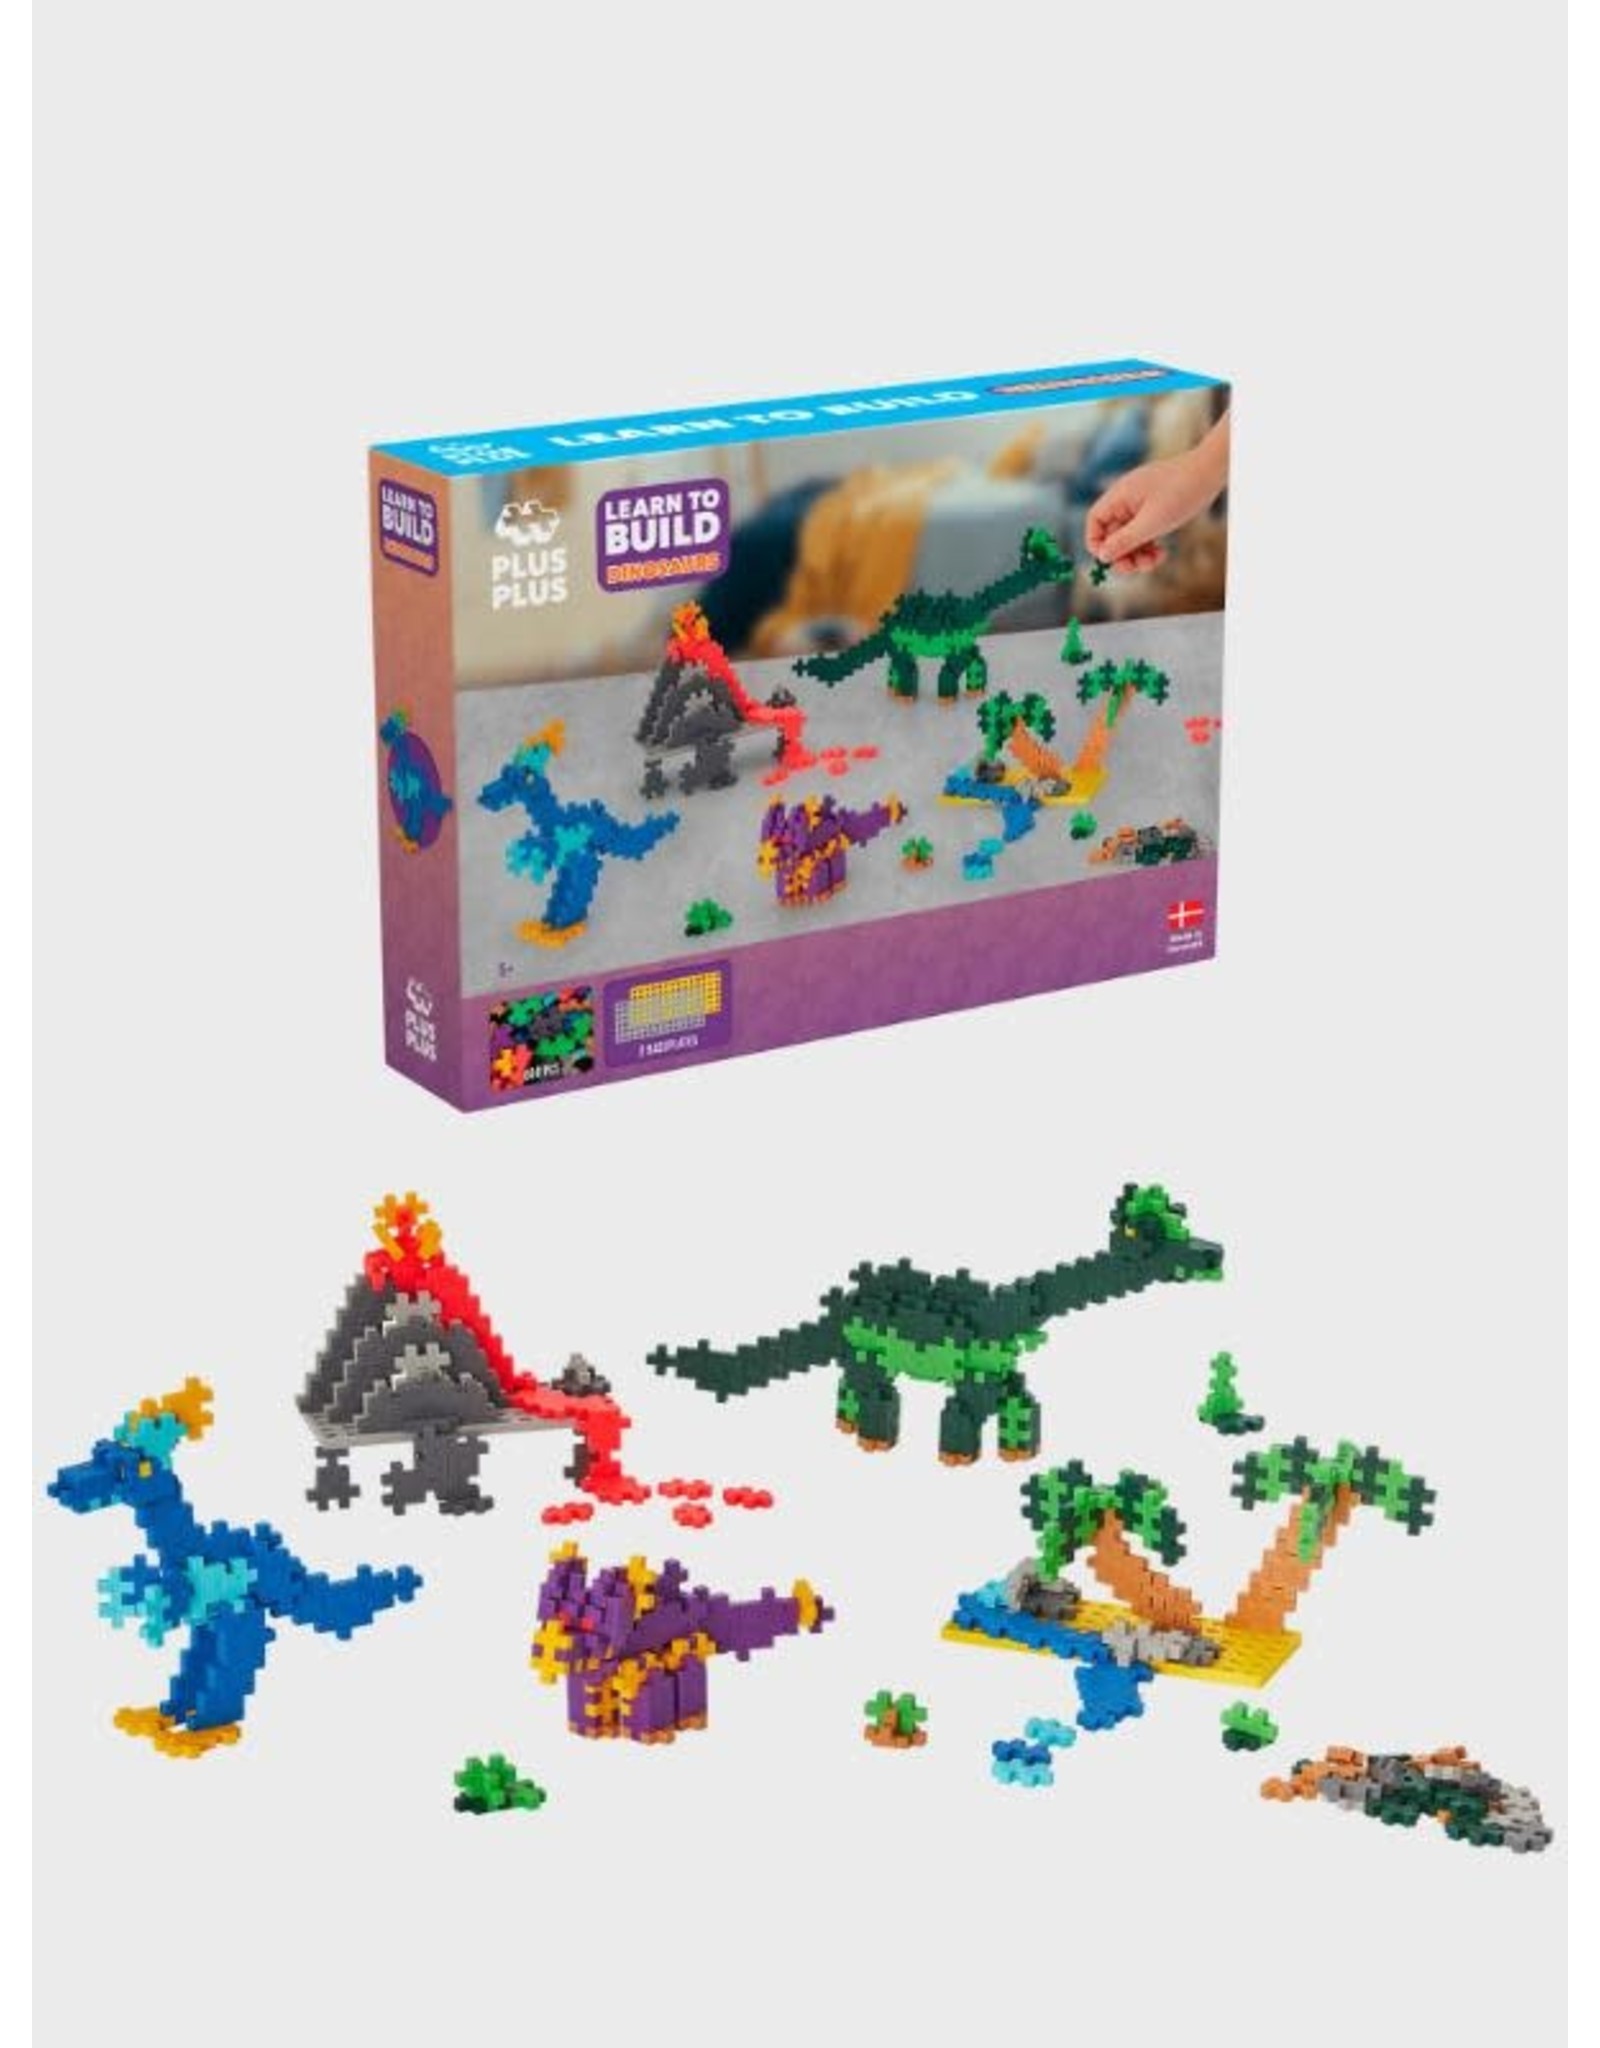 Plus-Plus - Puzzle by Number - Adventure 250pcs - Plus-Plus Toys